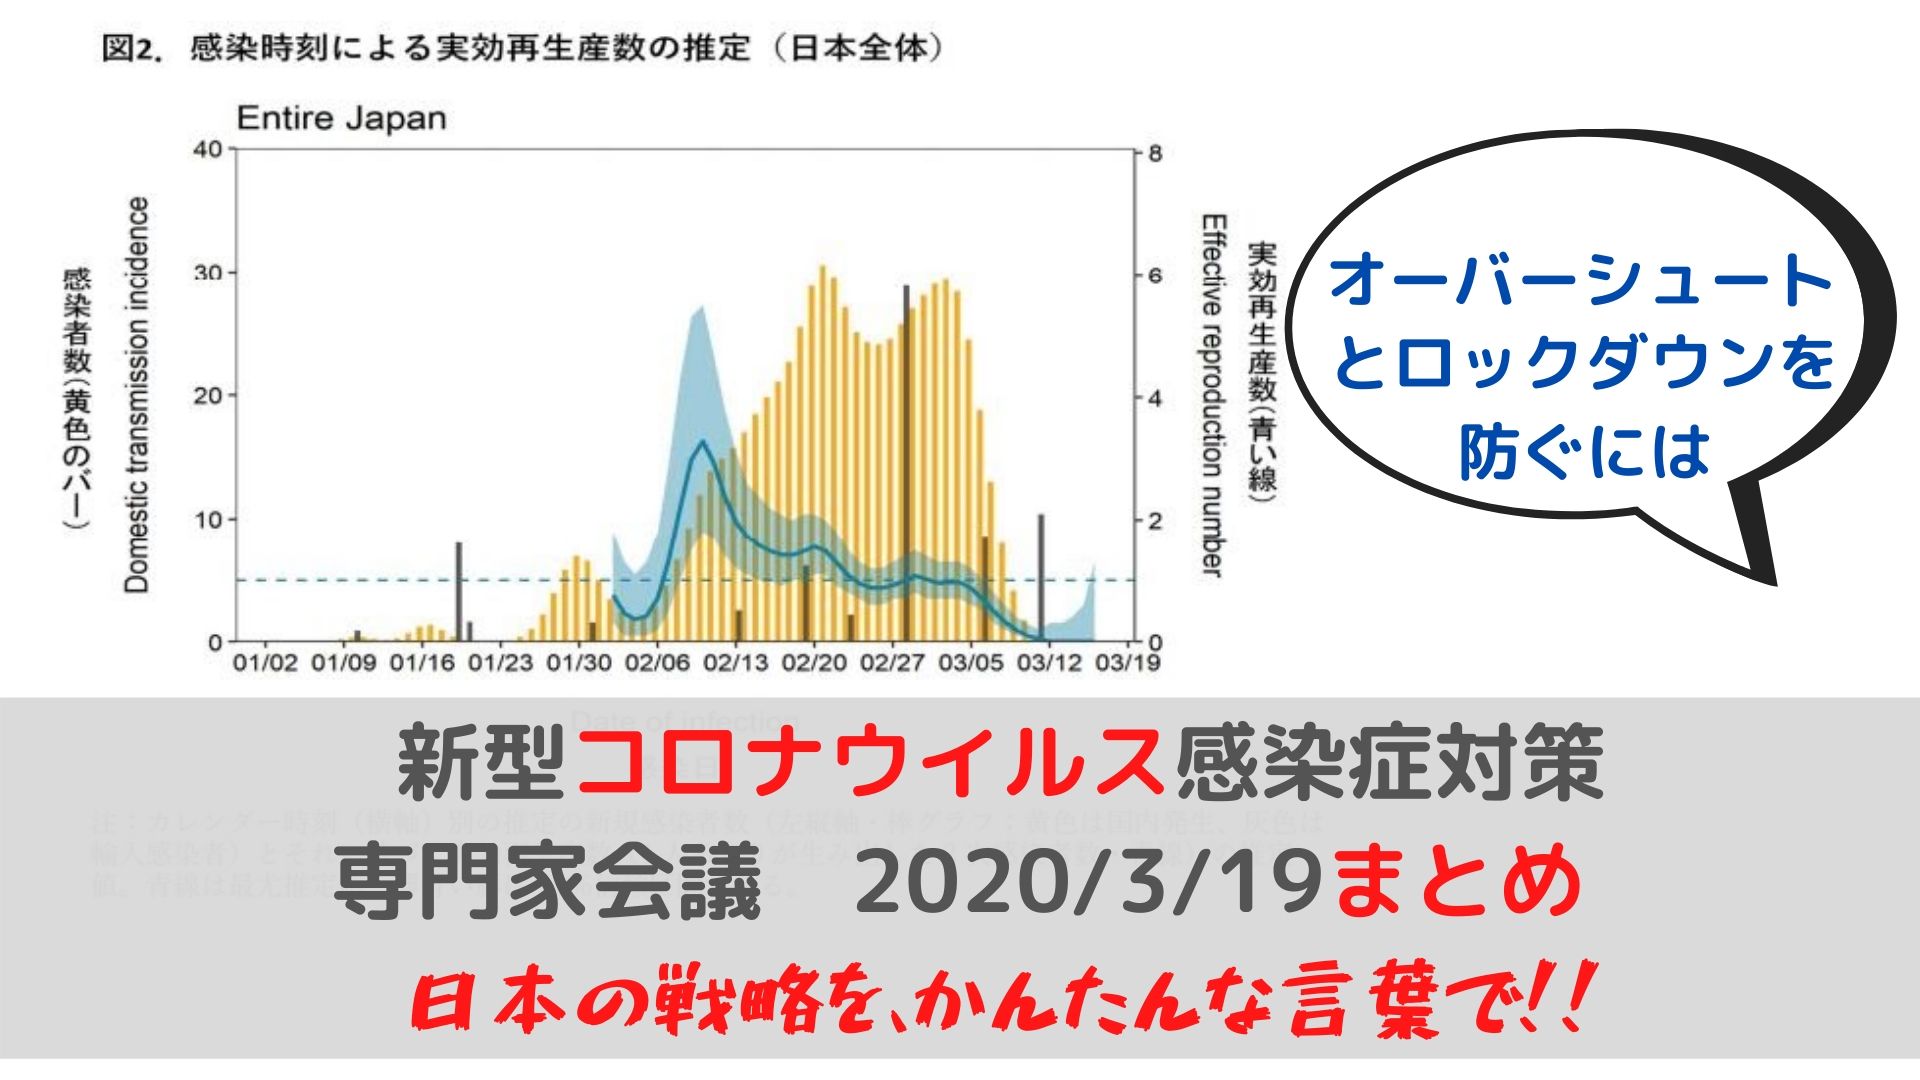 新型コロナウイルス感染拡大による東京オリンピック・パラリンピックへの影響